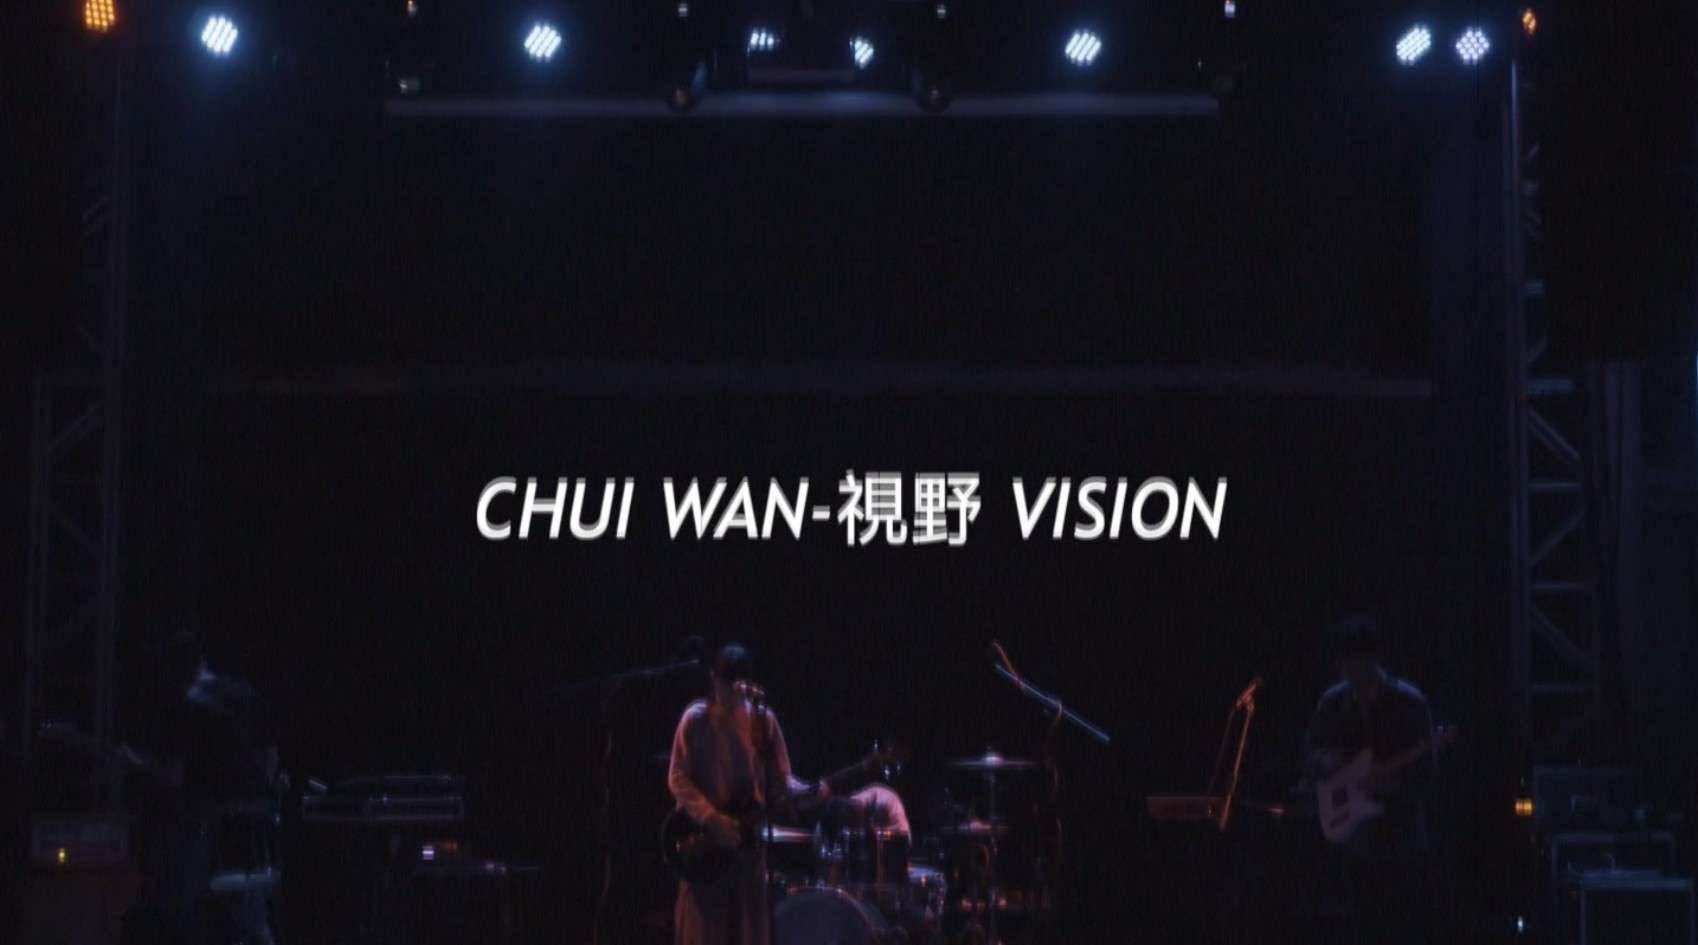 CHUI WAN-視野 live in shenzhen